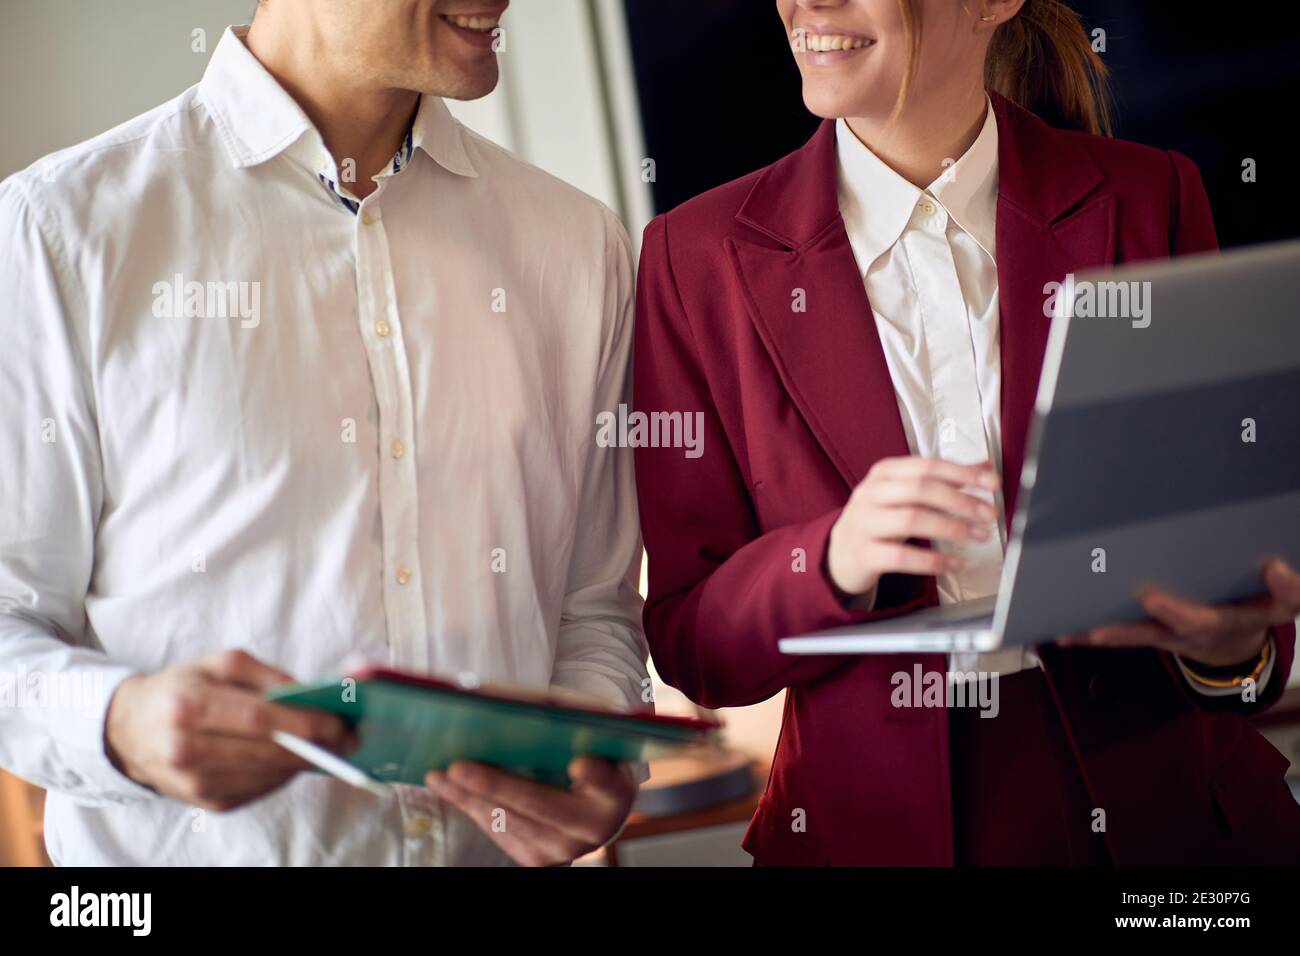 Un jeune couple se prépare à une réunion lors de son voyage d'affaires pour une nouvelle offre. Hôtel, affaires, personnes Banque D'Images